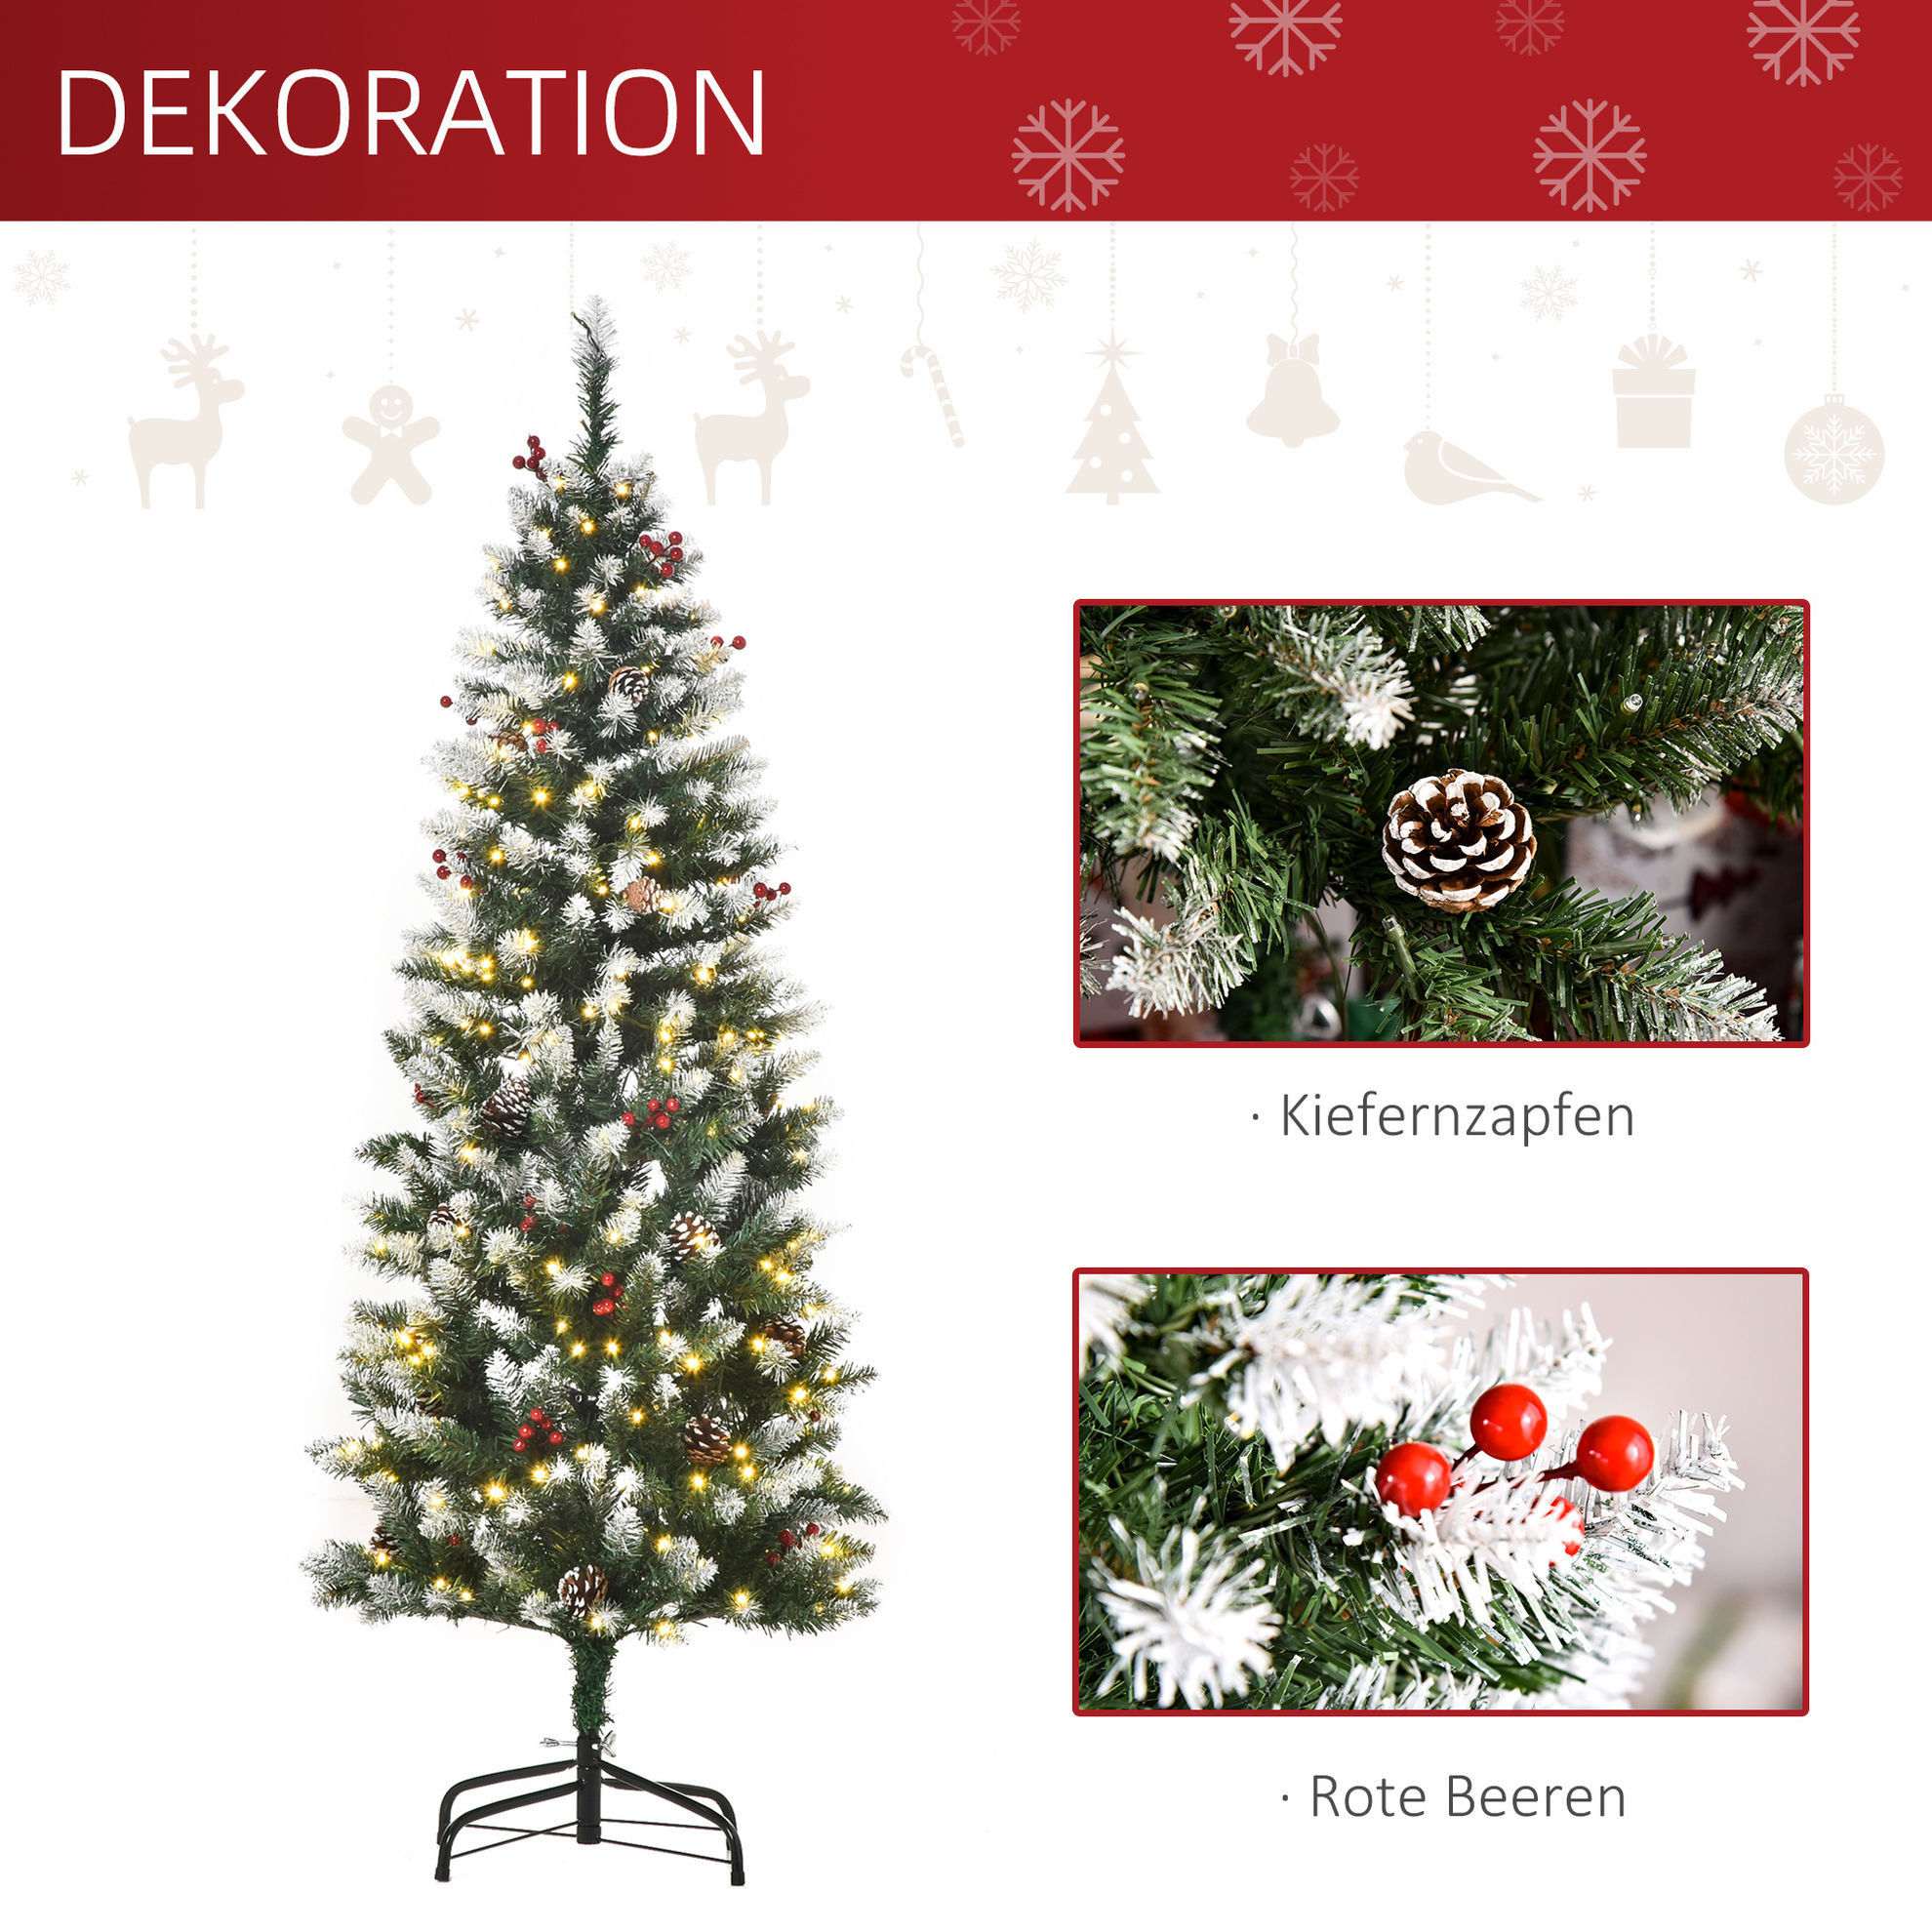 Künstlicher Weihnachtsbaum mit Beleuchtung, Schmuck und künstlichen Schnee  | Weltbild.de